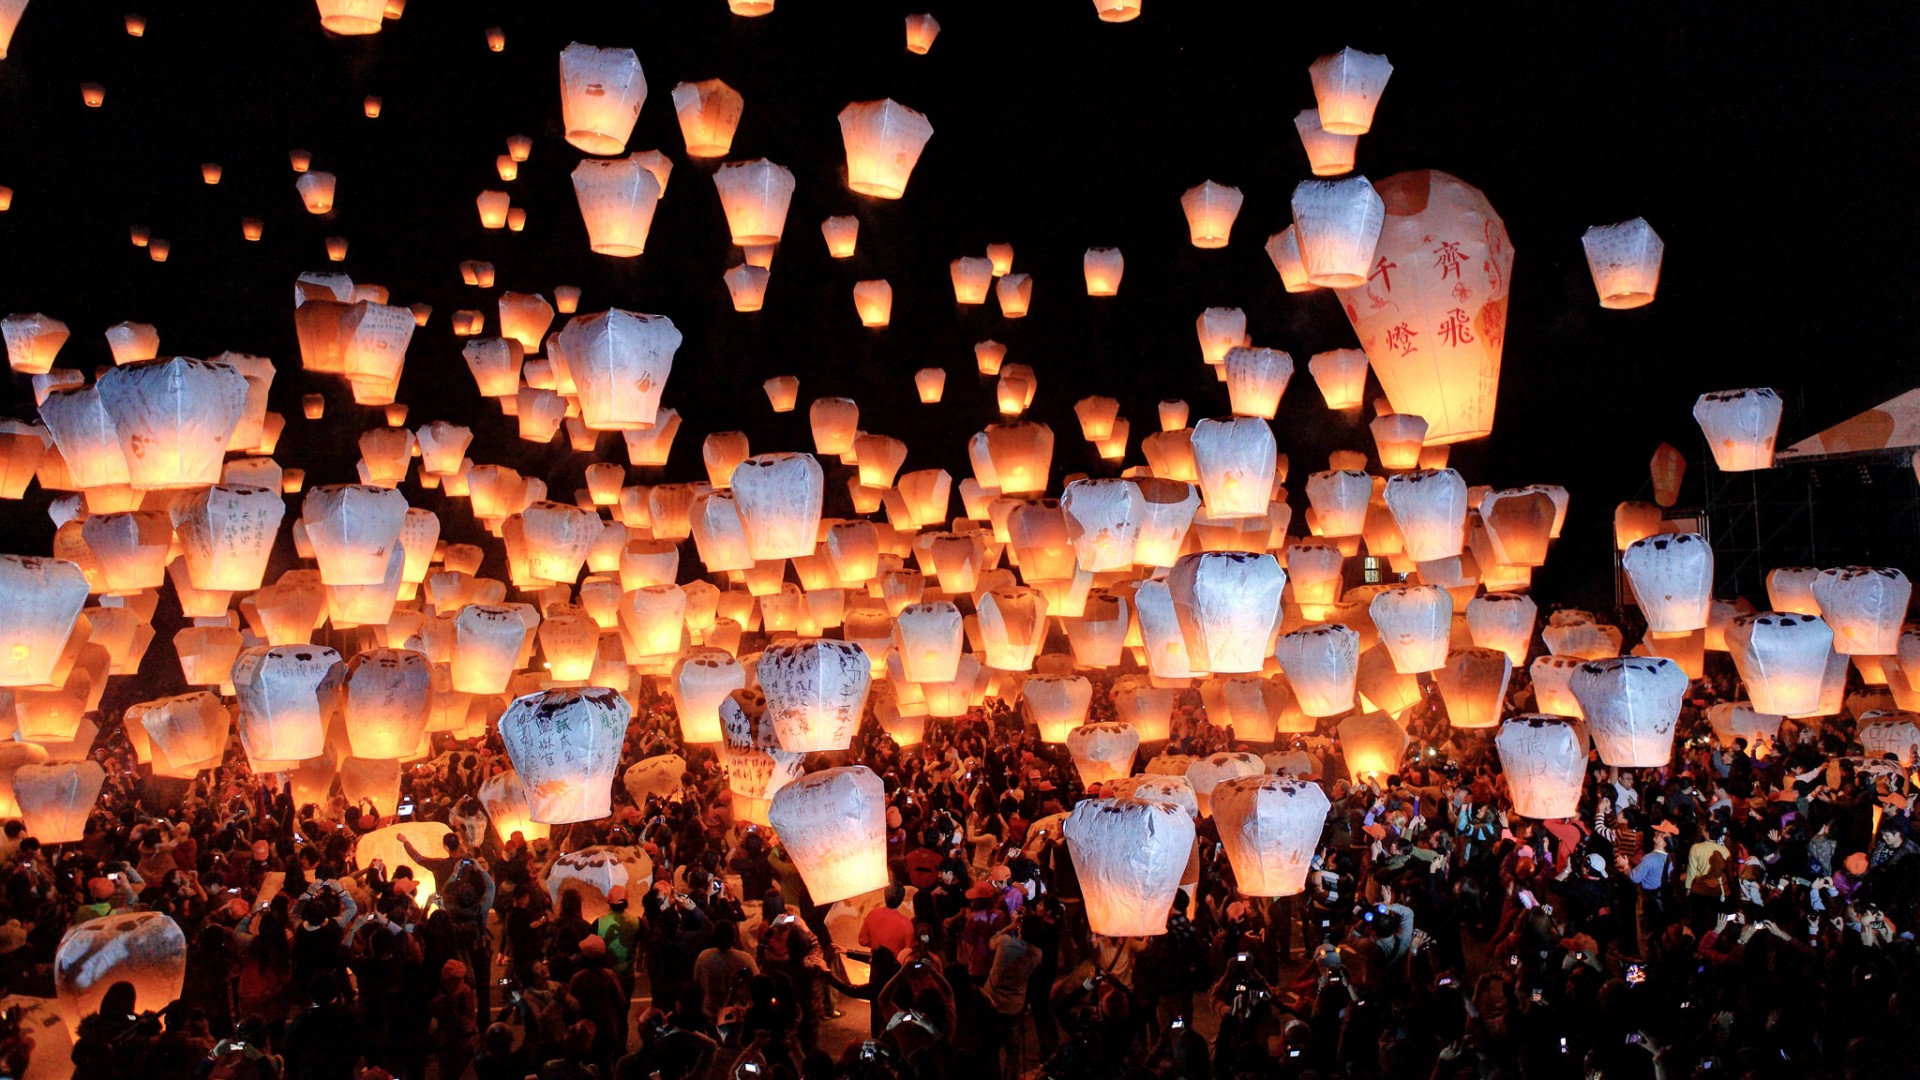 fondo de pantalla de linterna china,linterna,personas,multitud,encendiendo,evento